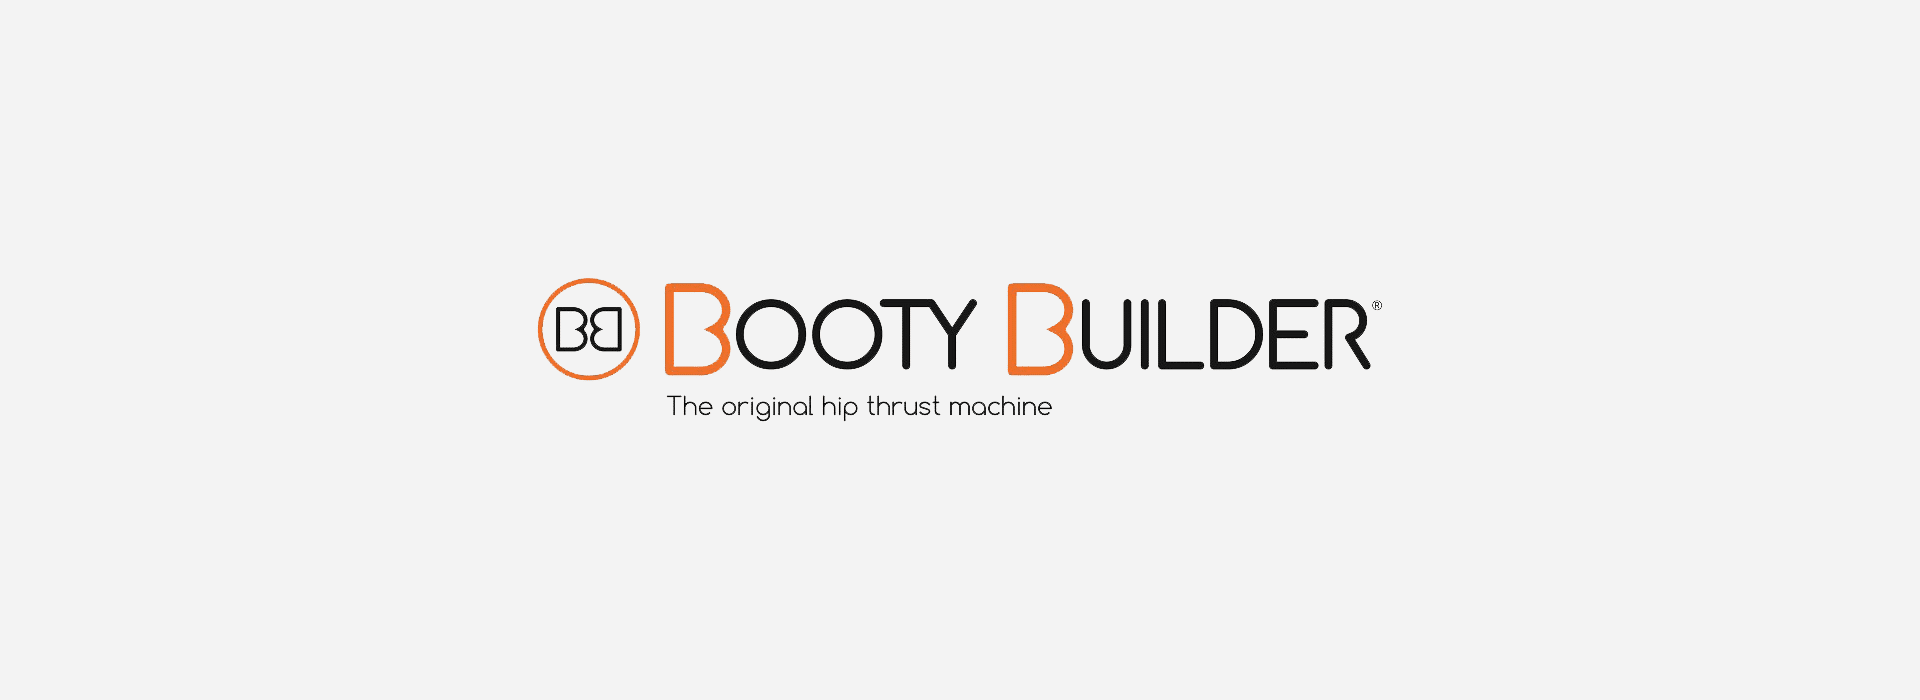 Découvrez tout ce qu’il se passe derrière le logo de Booty Builder